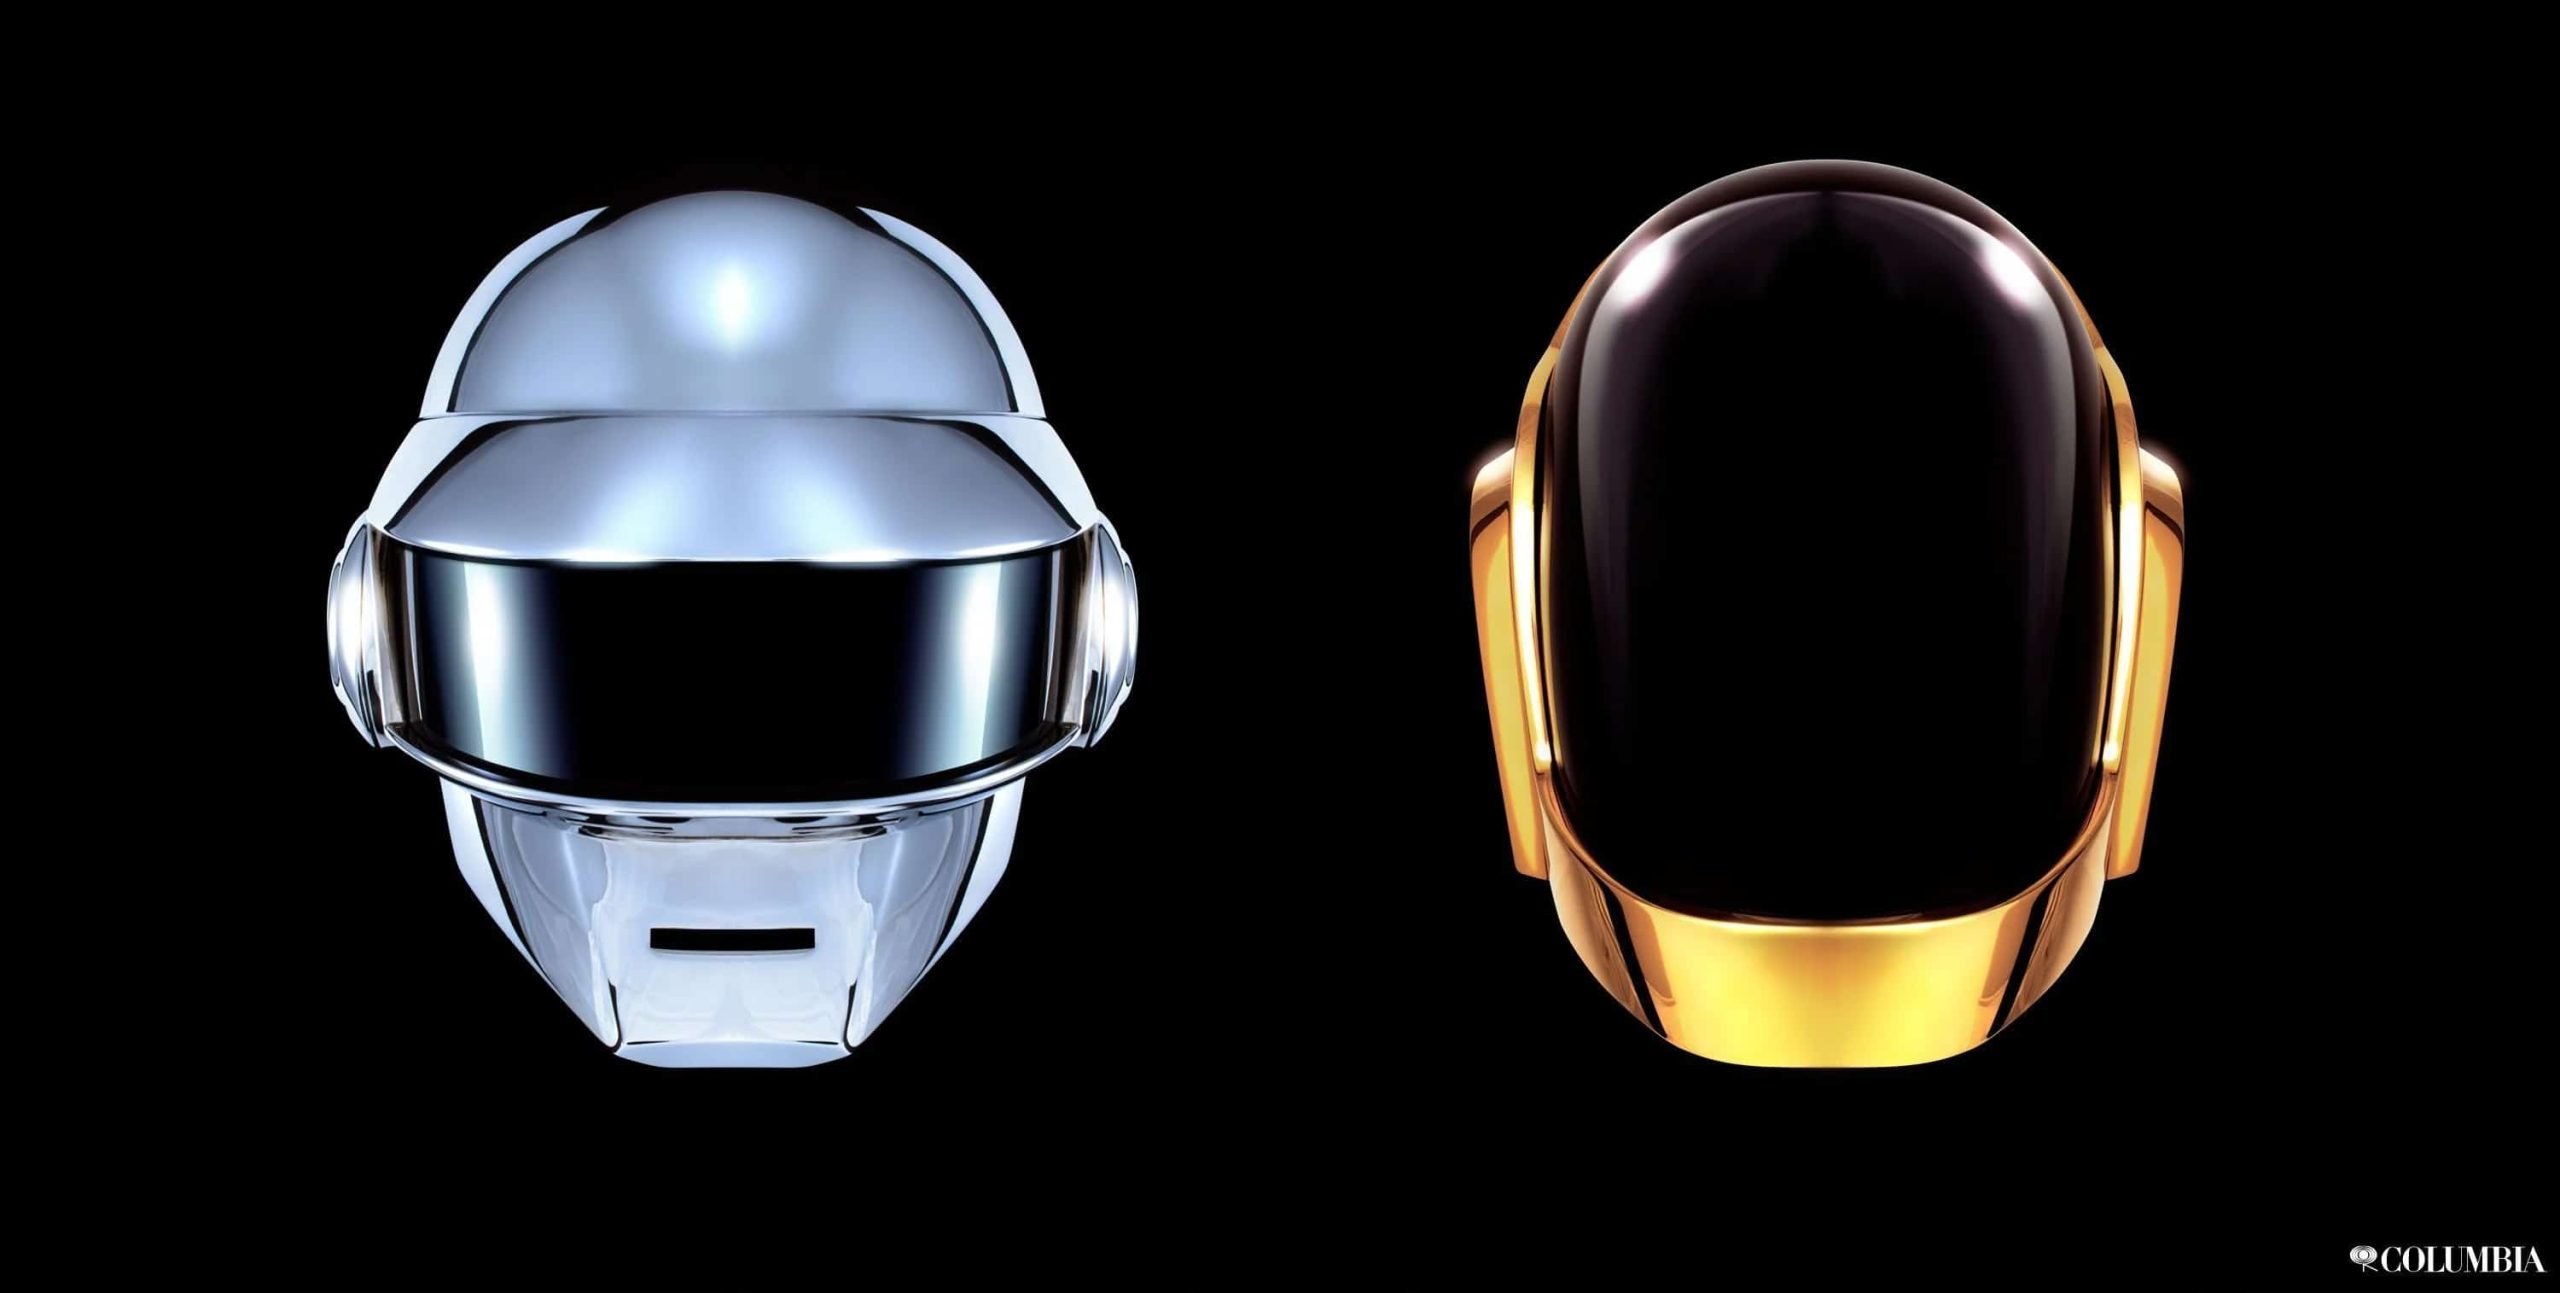 Daft Punk 'Random Access Memories' 10th-Anniversary Edition Announced